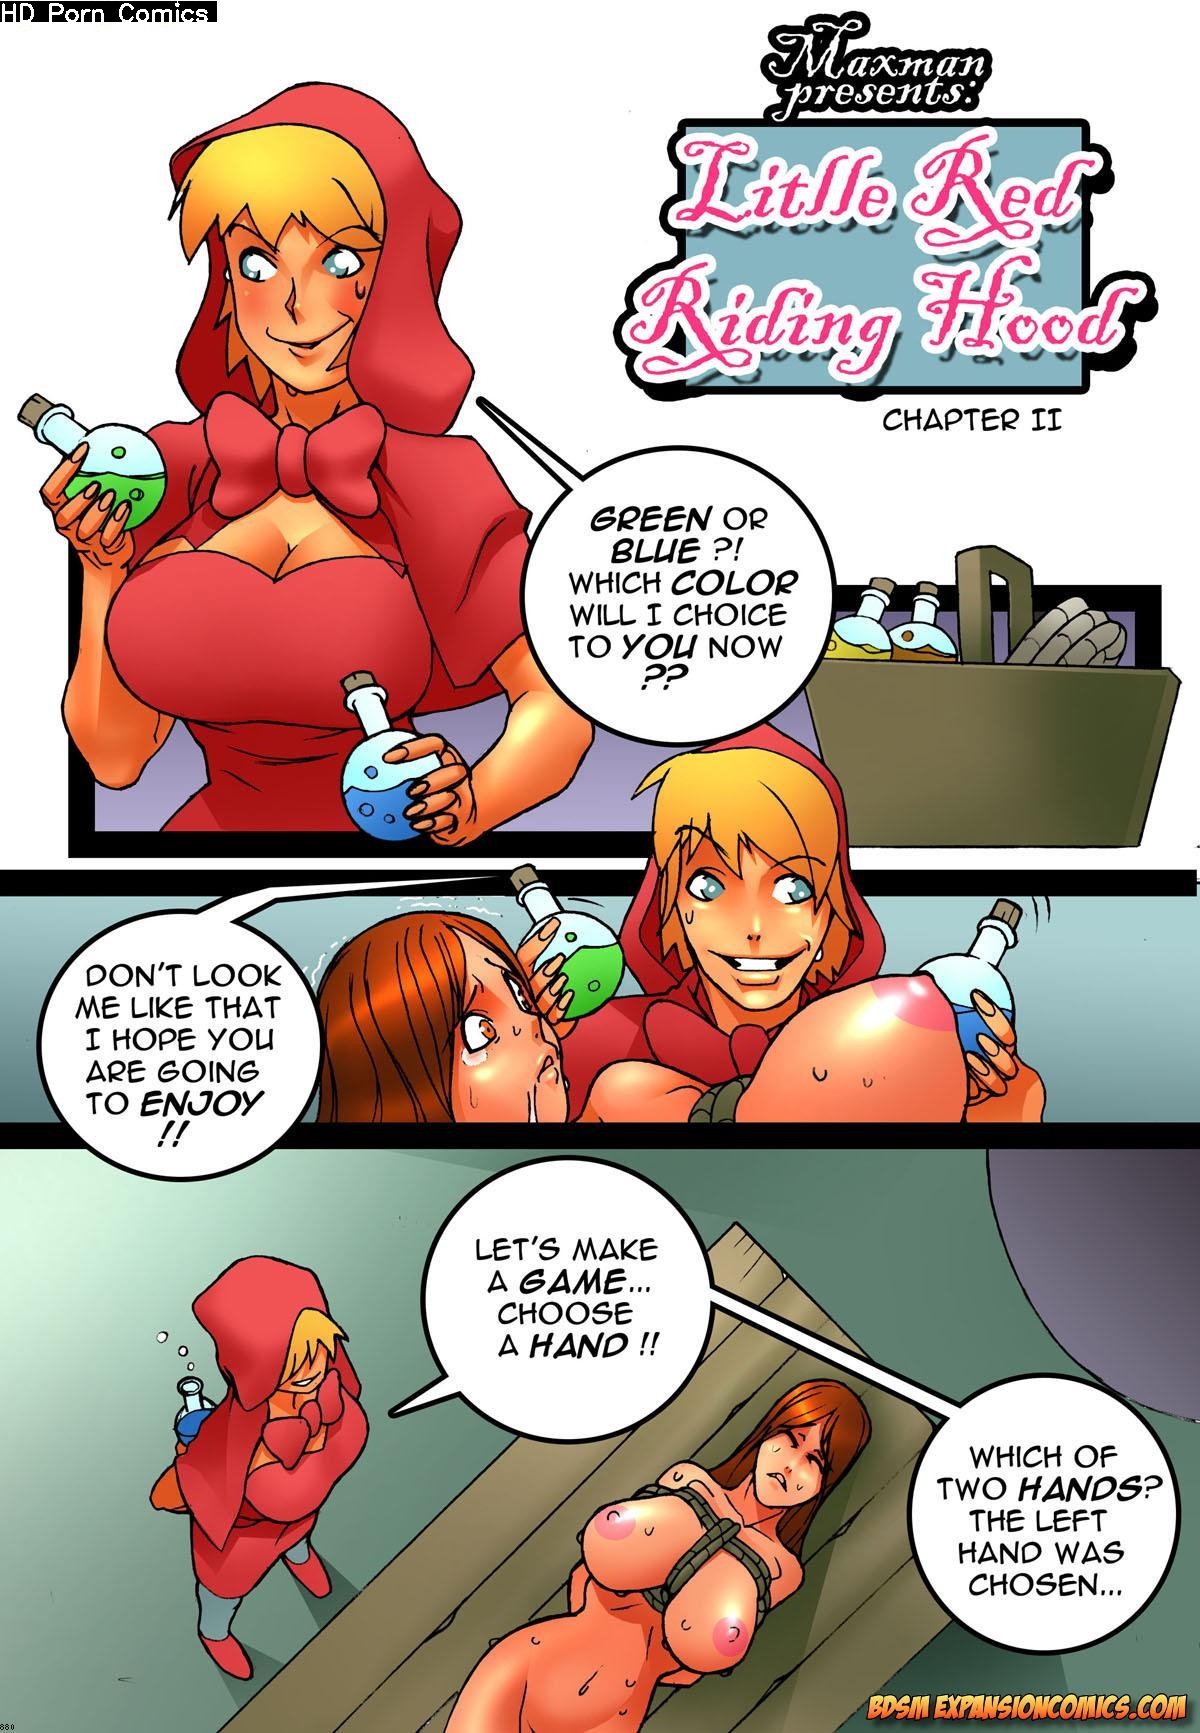 Untold Fairy Tales - Red Riding Hood 2 comic porn - HD Porn Comics